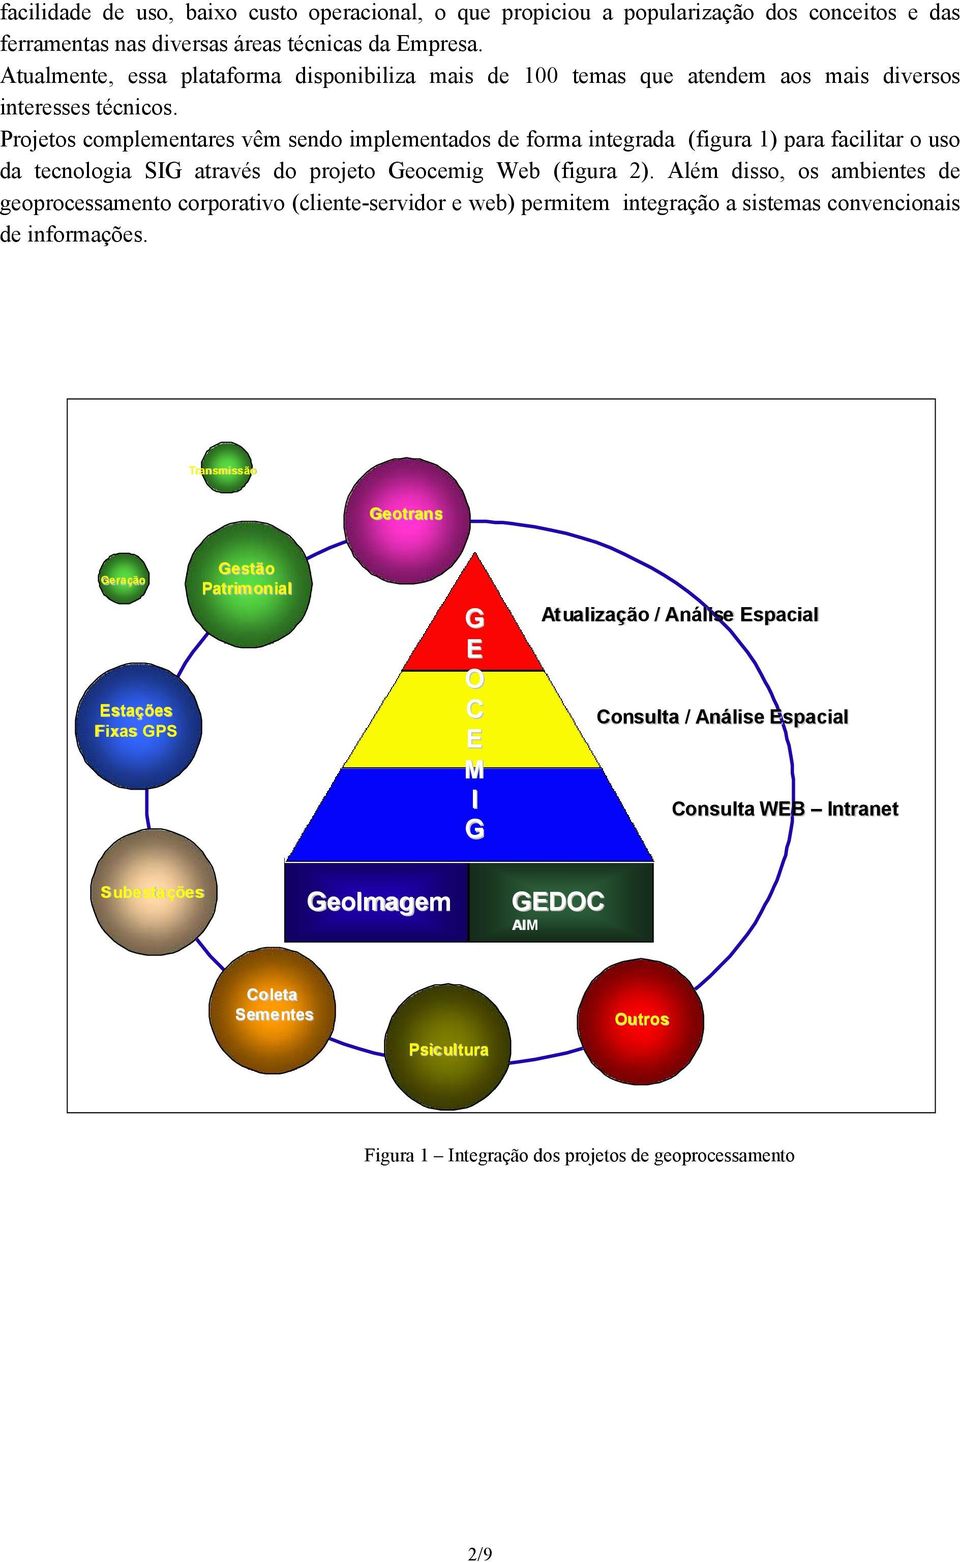 Projetos complementares vêm sendo implementados de forma integrada (figura 1) para facilitar o uso da tecnologia SIG através do projeto Geocemig Web (figura 2).